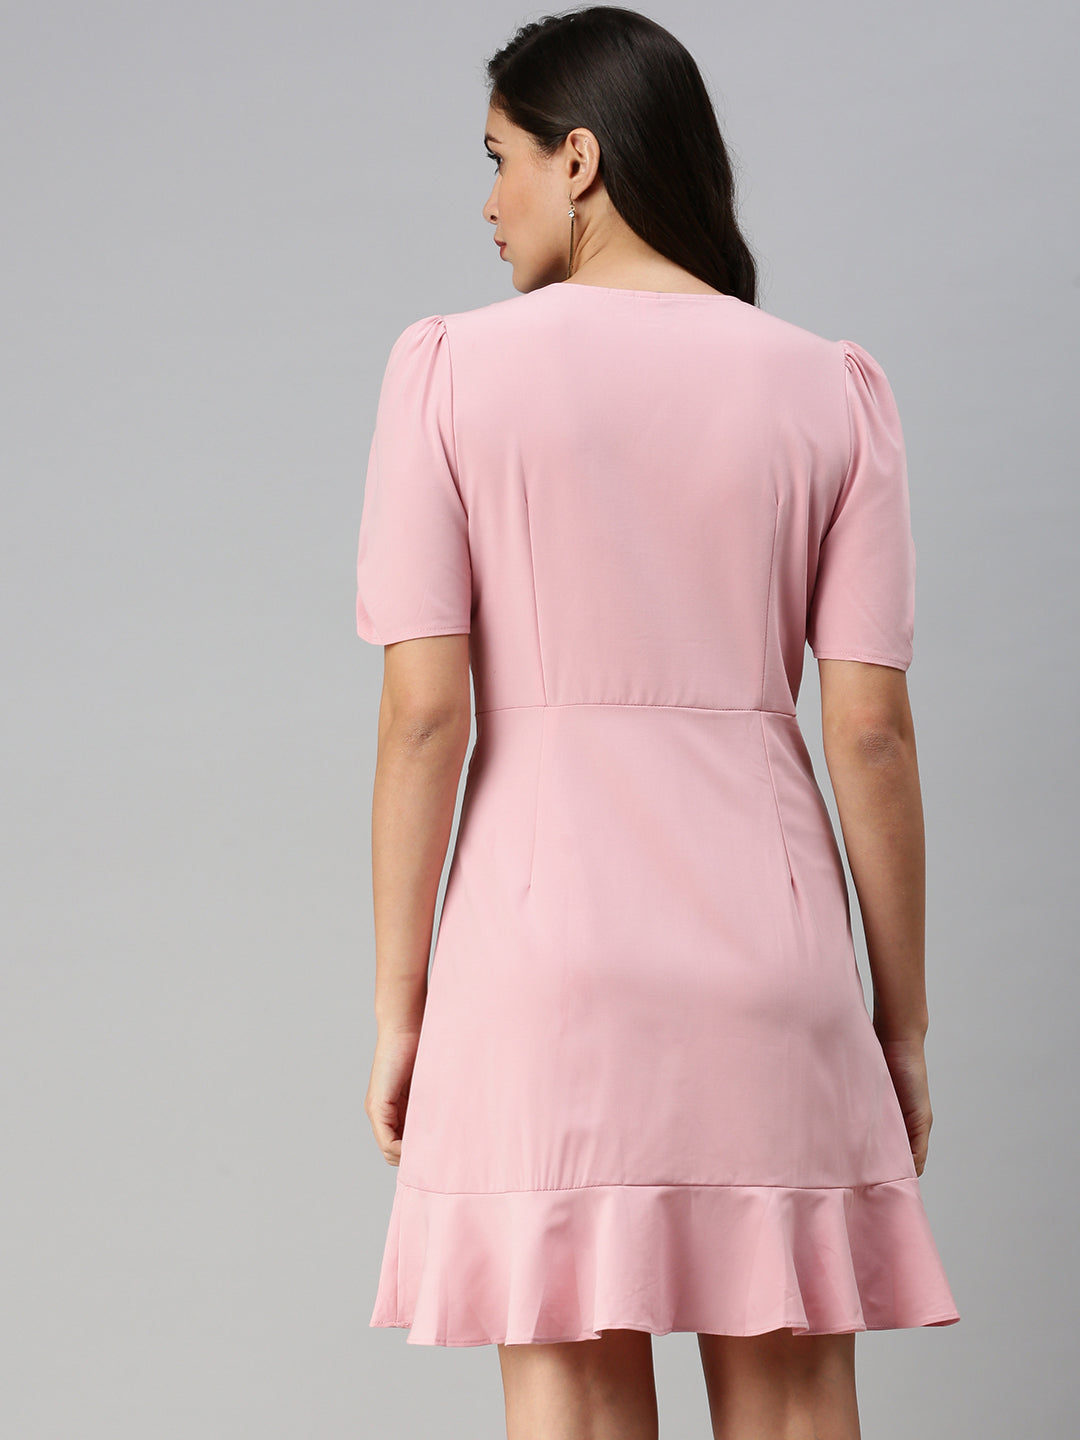 Women V-Neck Solid A-Line Pink Dress